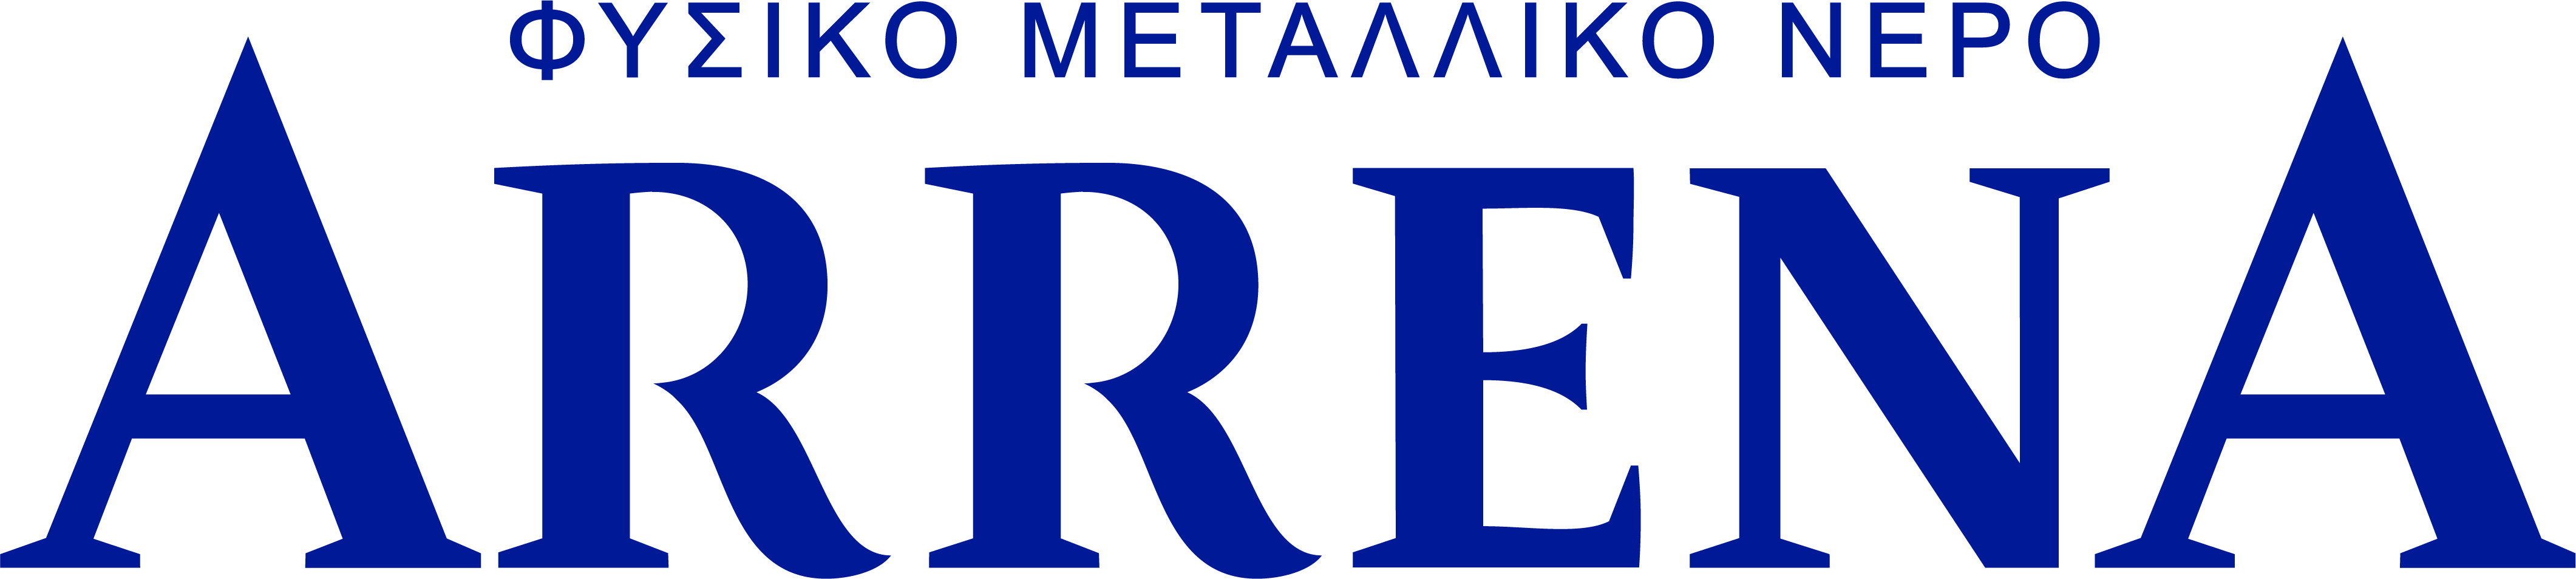 Arrena logo